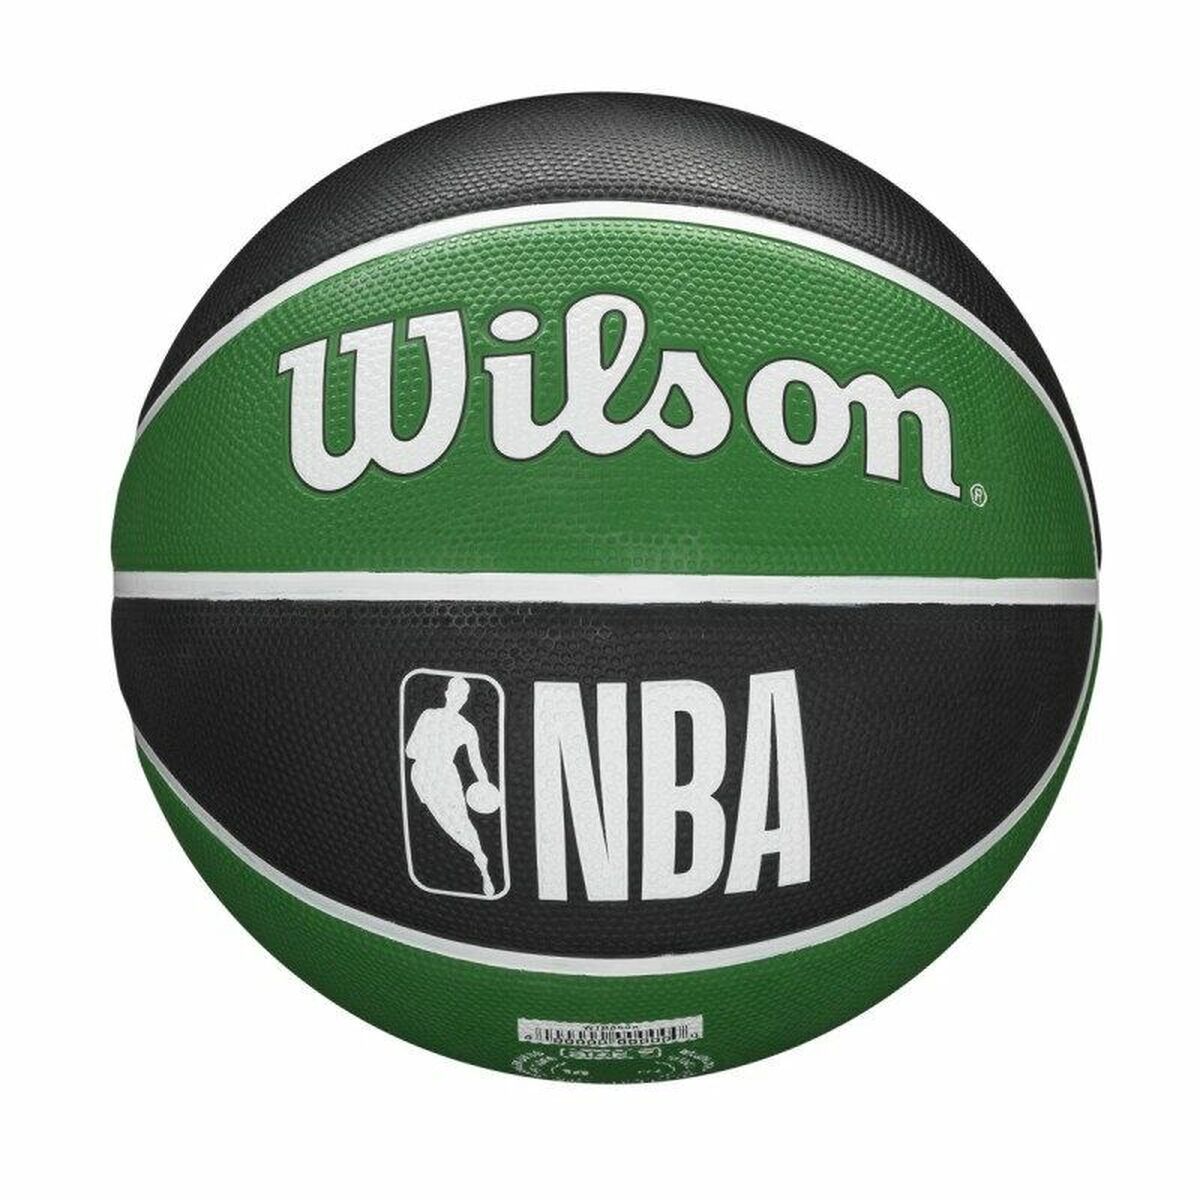 Pallone da Basket Wilson Nba Team Tribute Boston Celtics Verde Taglia unica